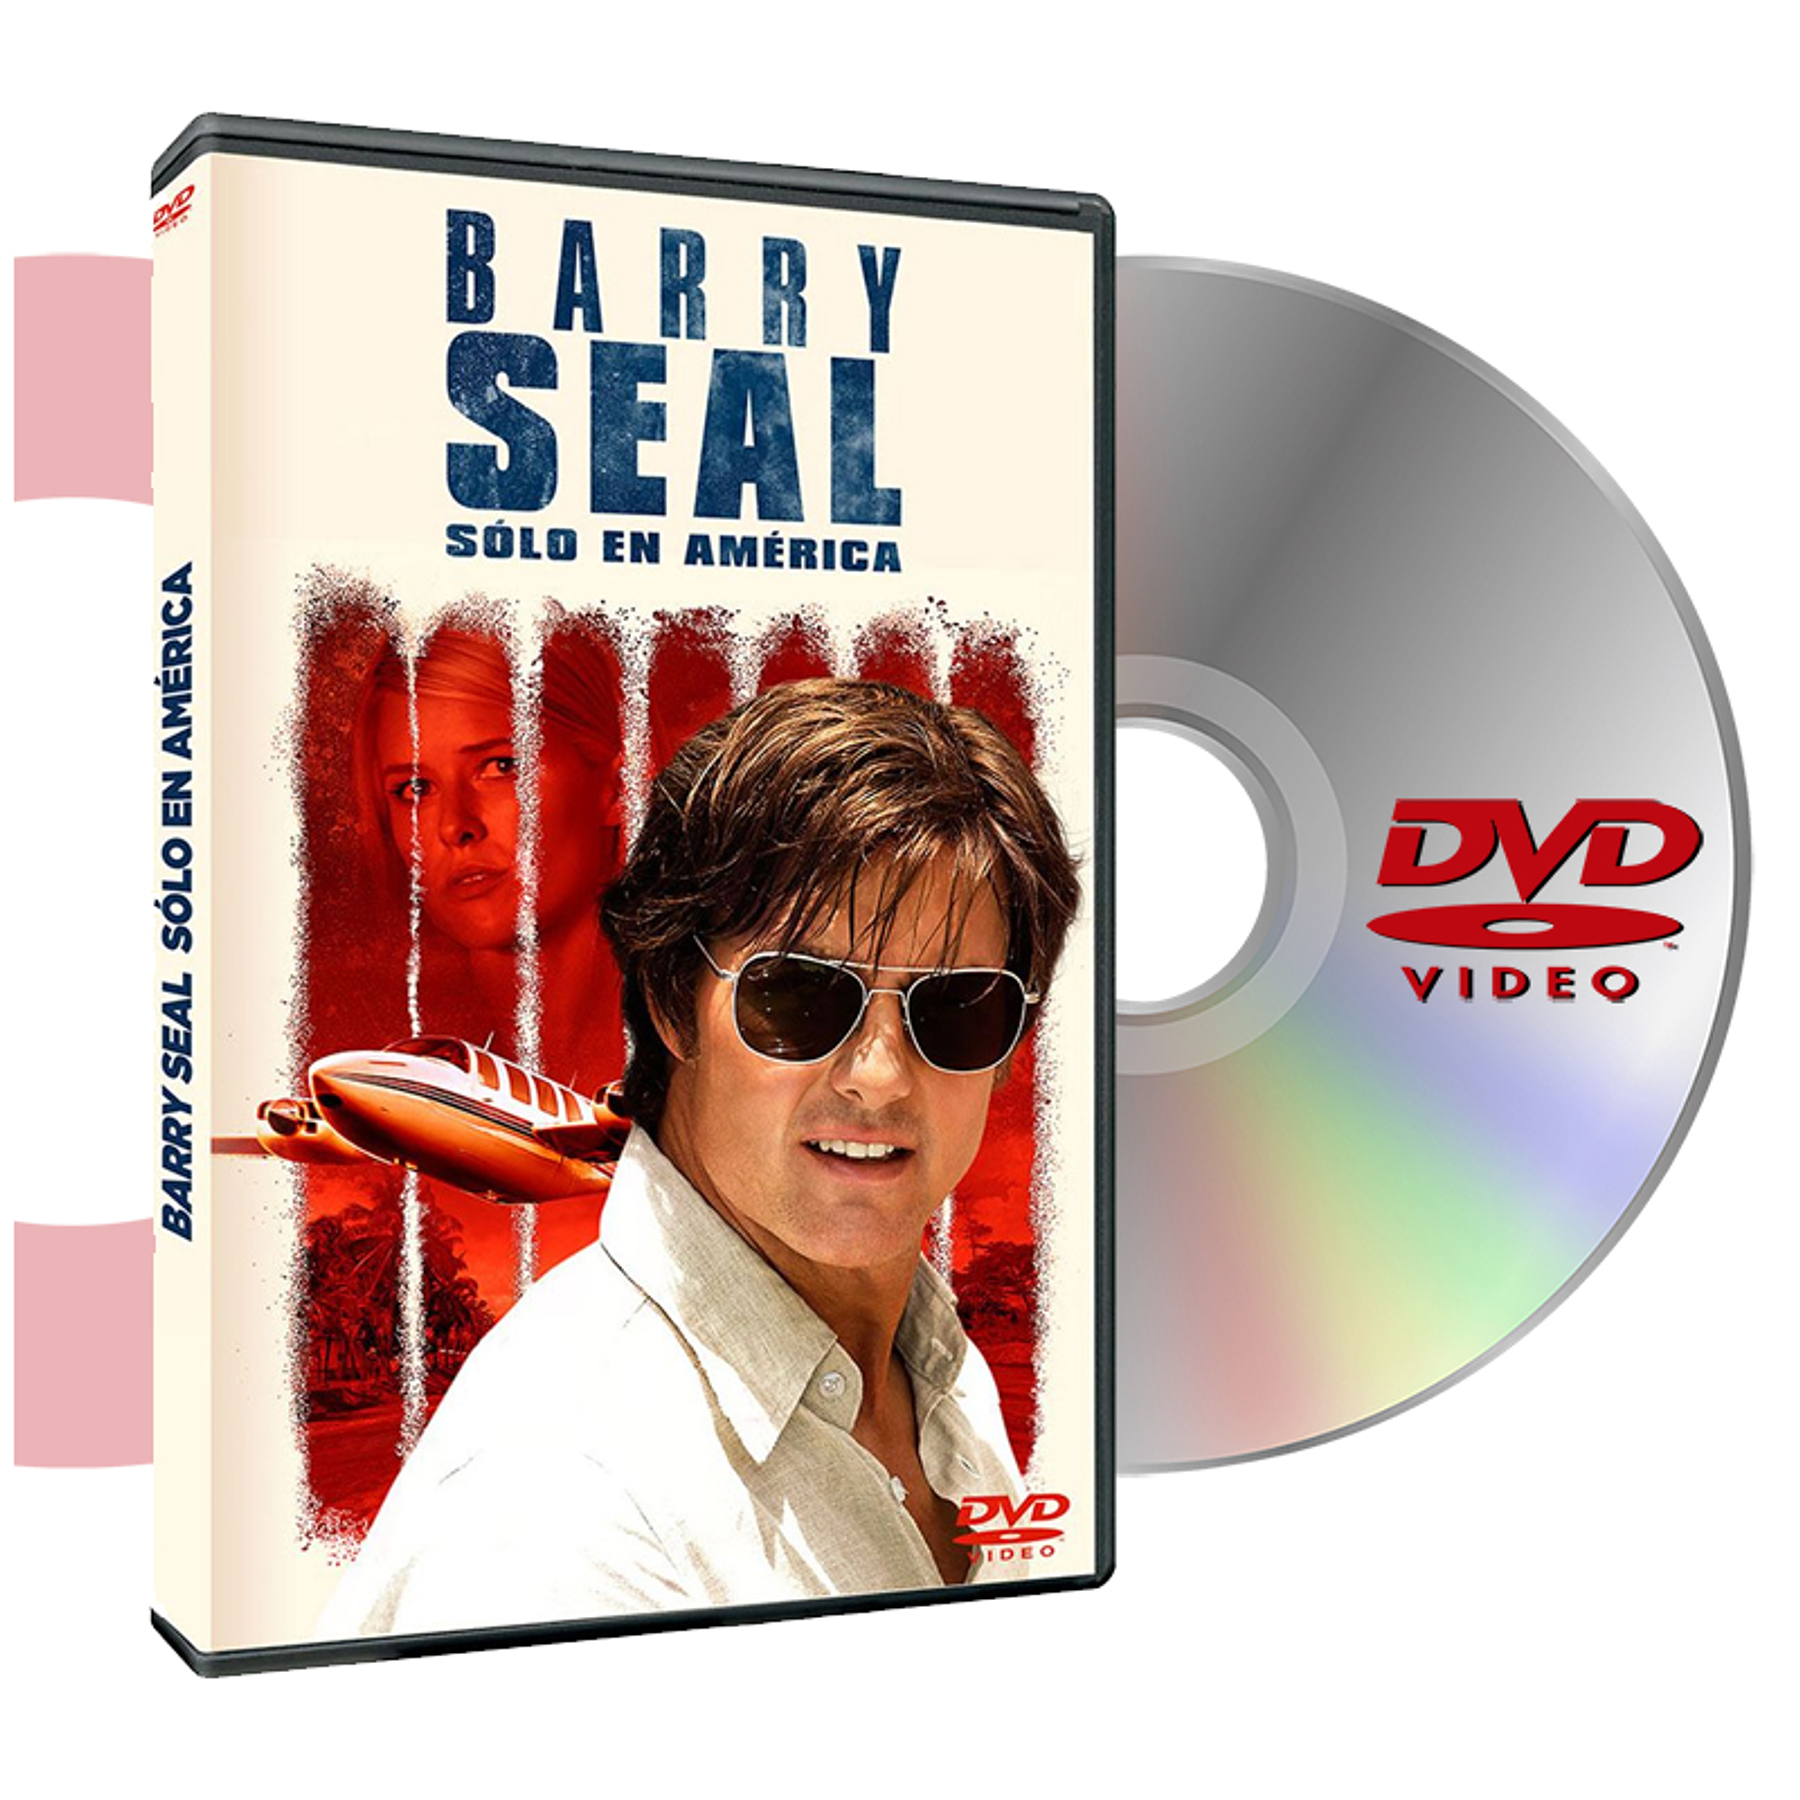 DVD BARRY SEAL SOLO EN AMERICA